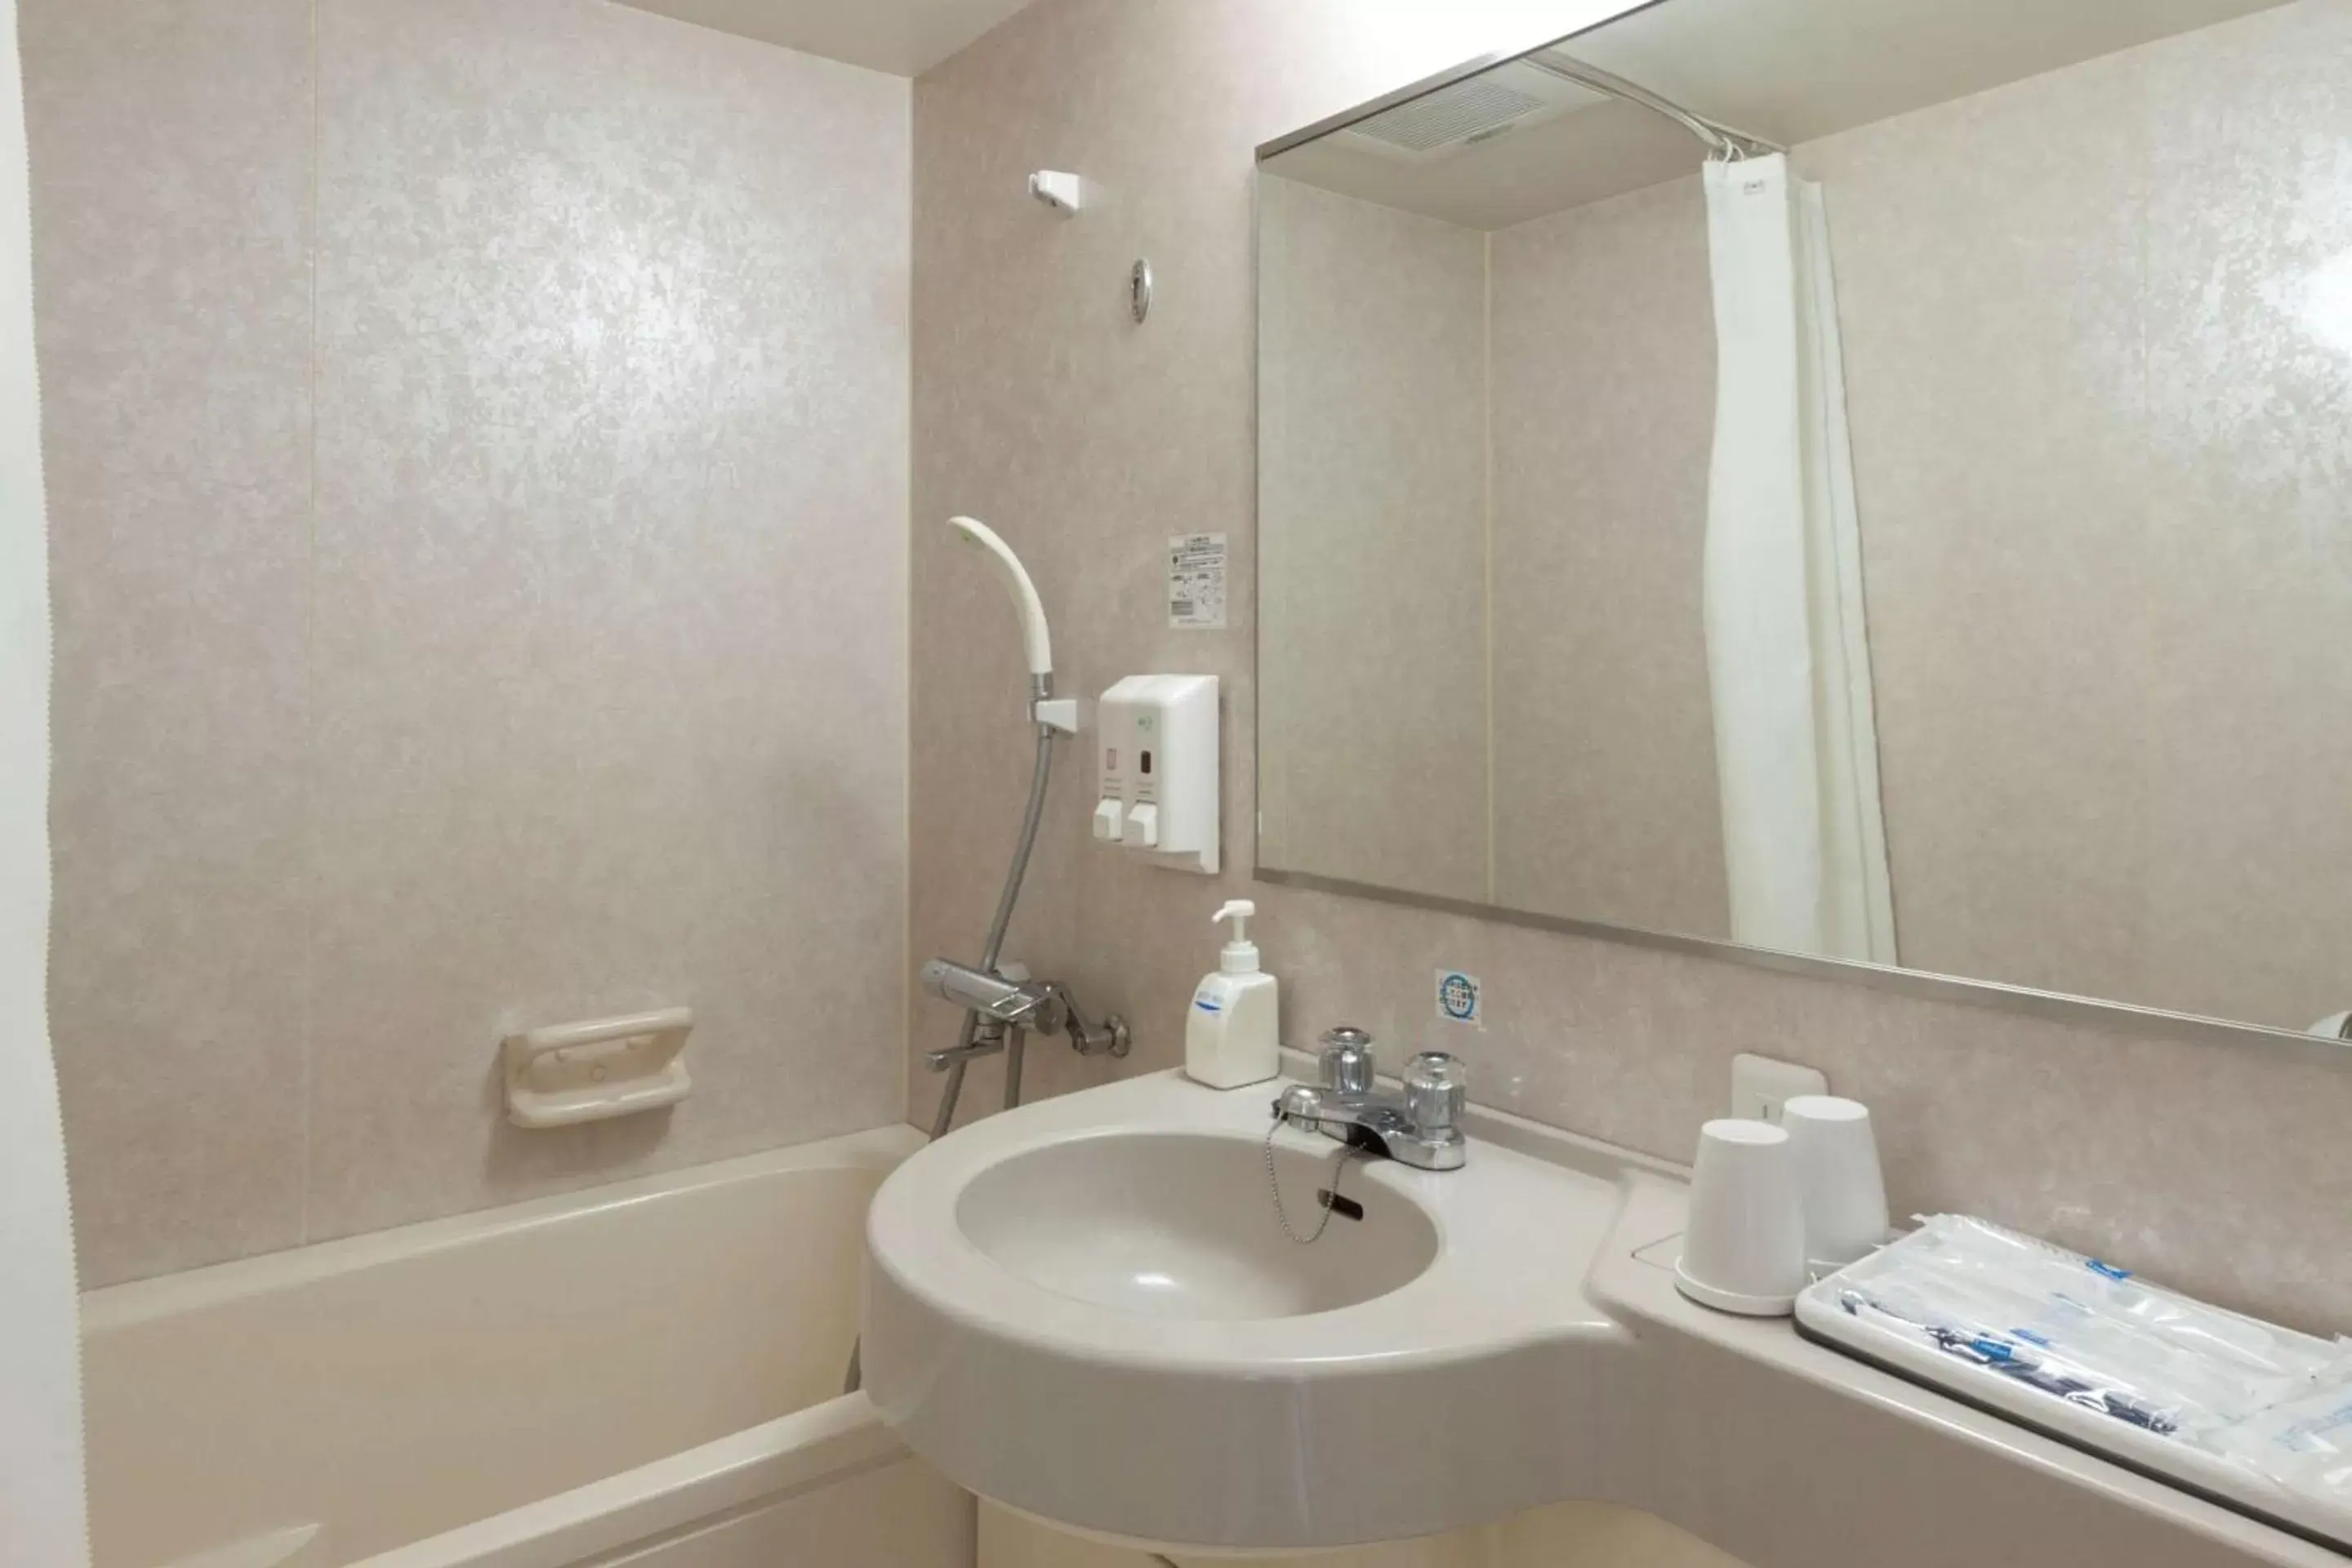 Bedroom, Bathroom in Comfort Hotel Tokyo Kiyosumi Shirakawa